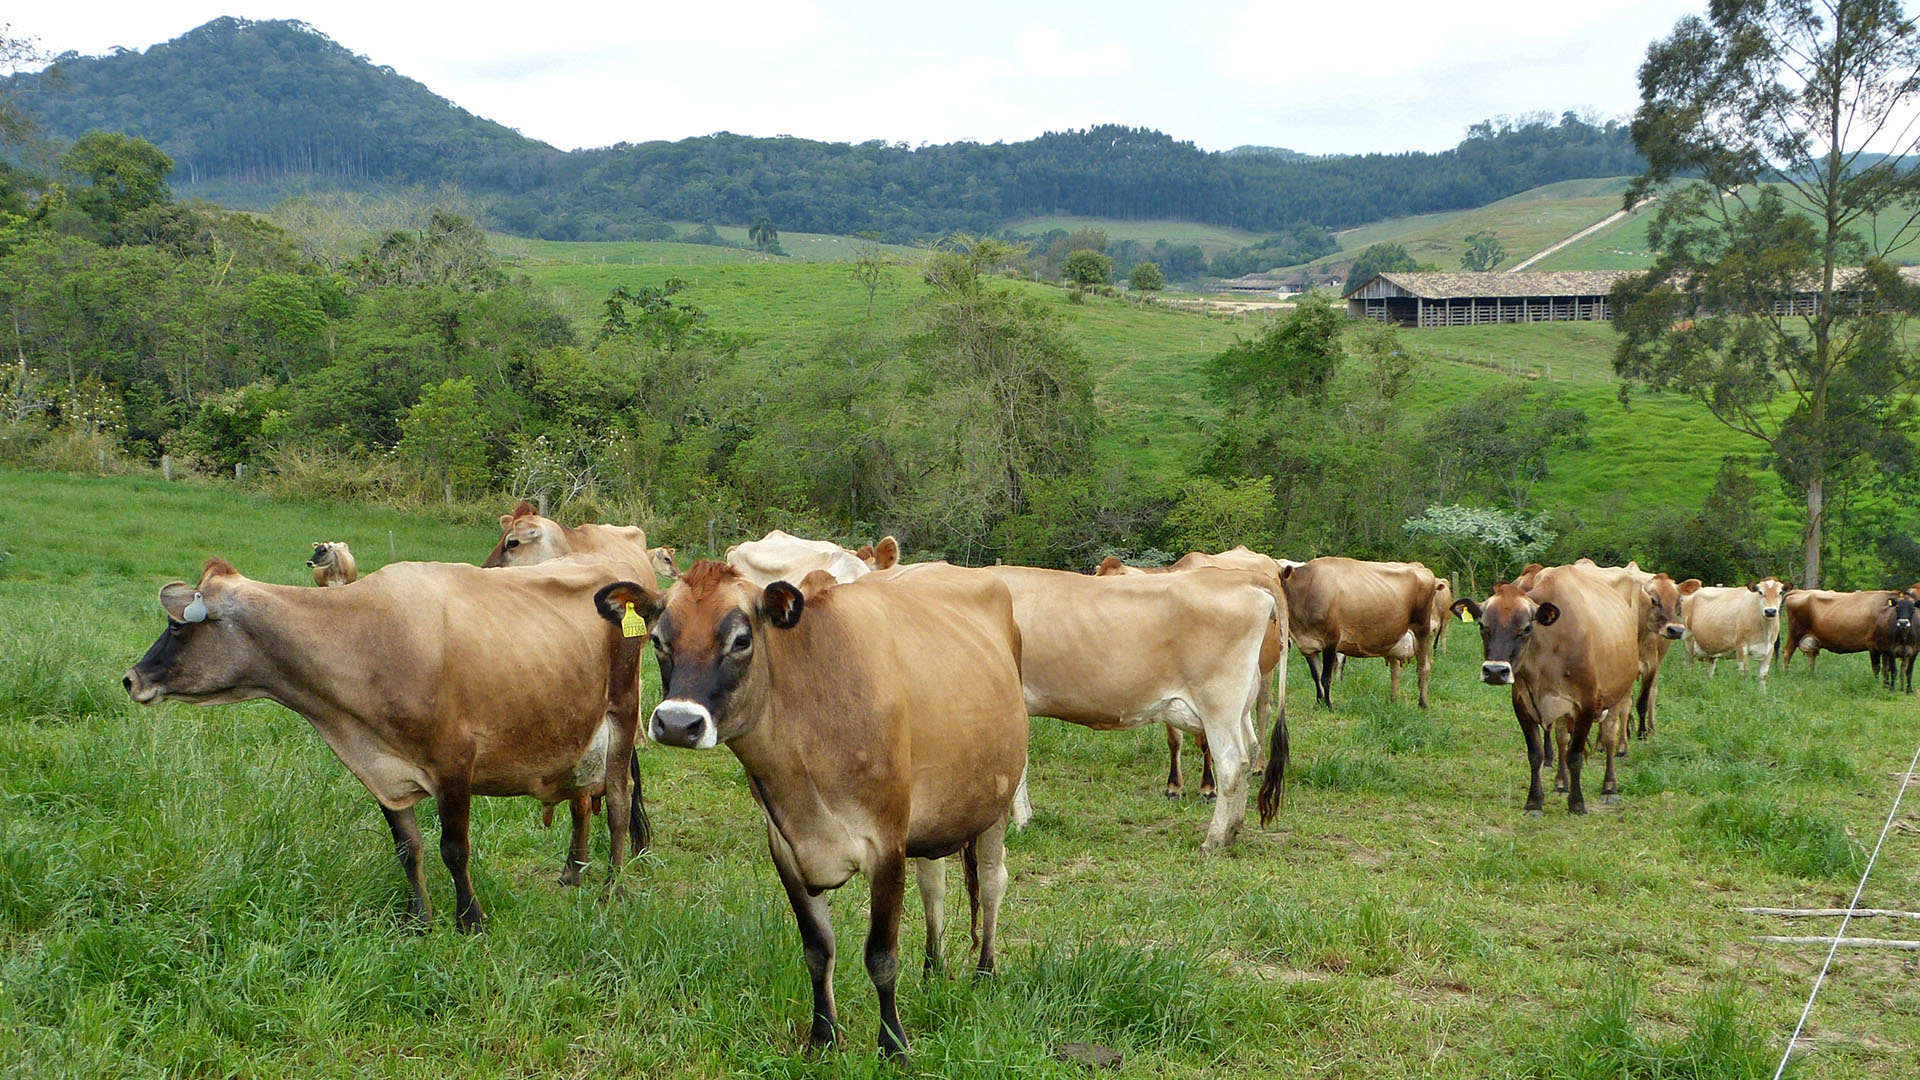 Pesquisadores avaliam se microrganismos podem reduzir emissão de metano de bovinos